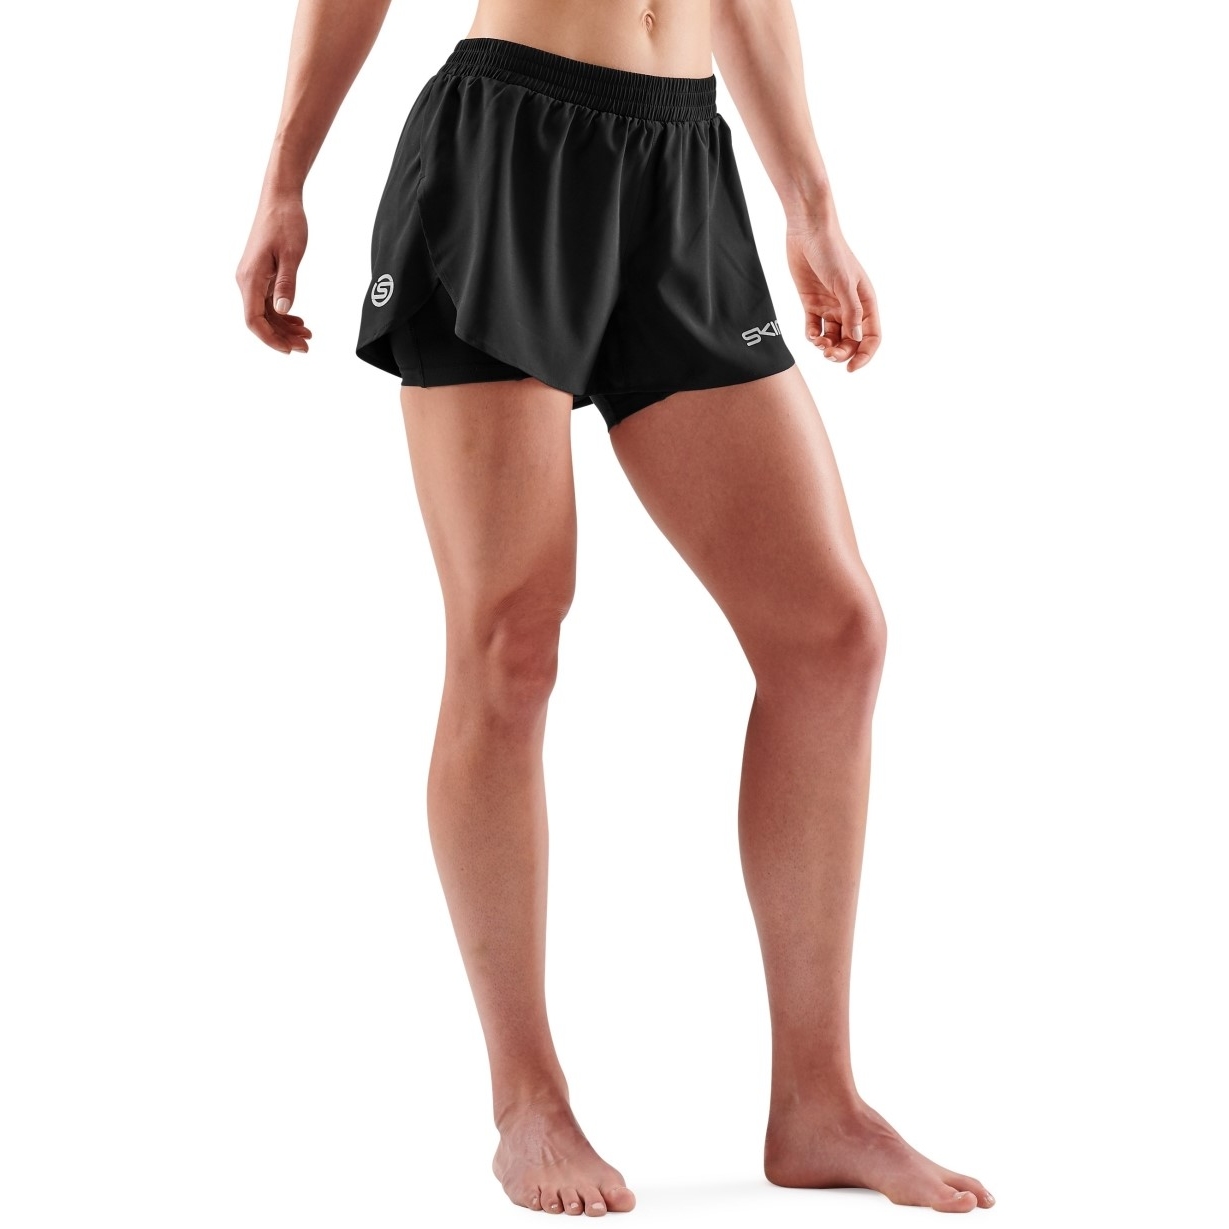 Produktbild von SKINS 3-Series Superpose Fitness-Hose 2-in-1 Damen - Schwarz